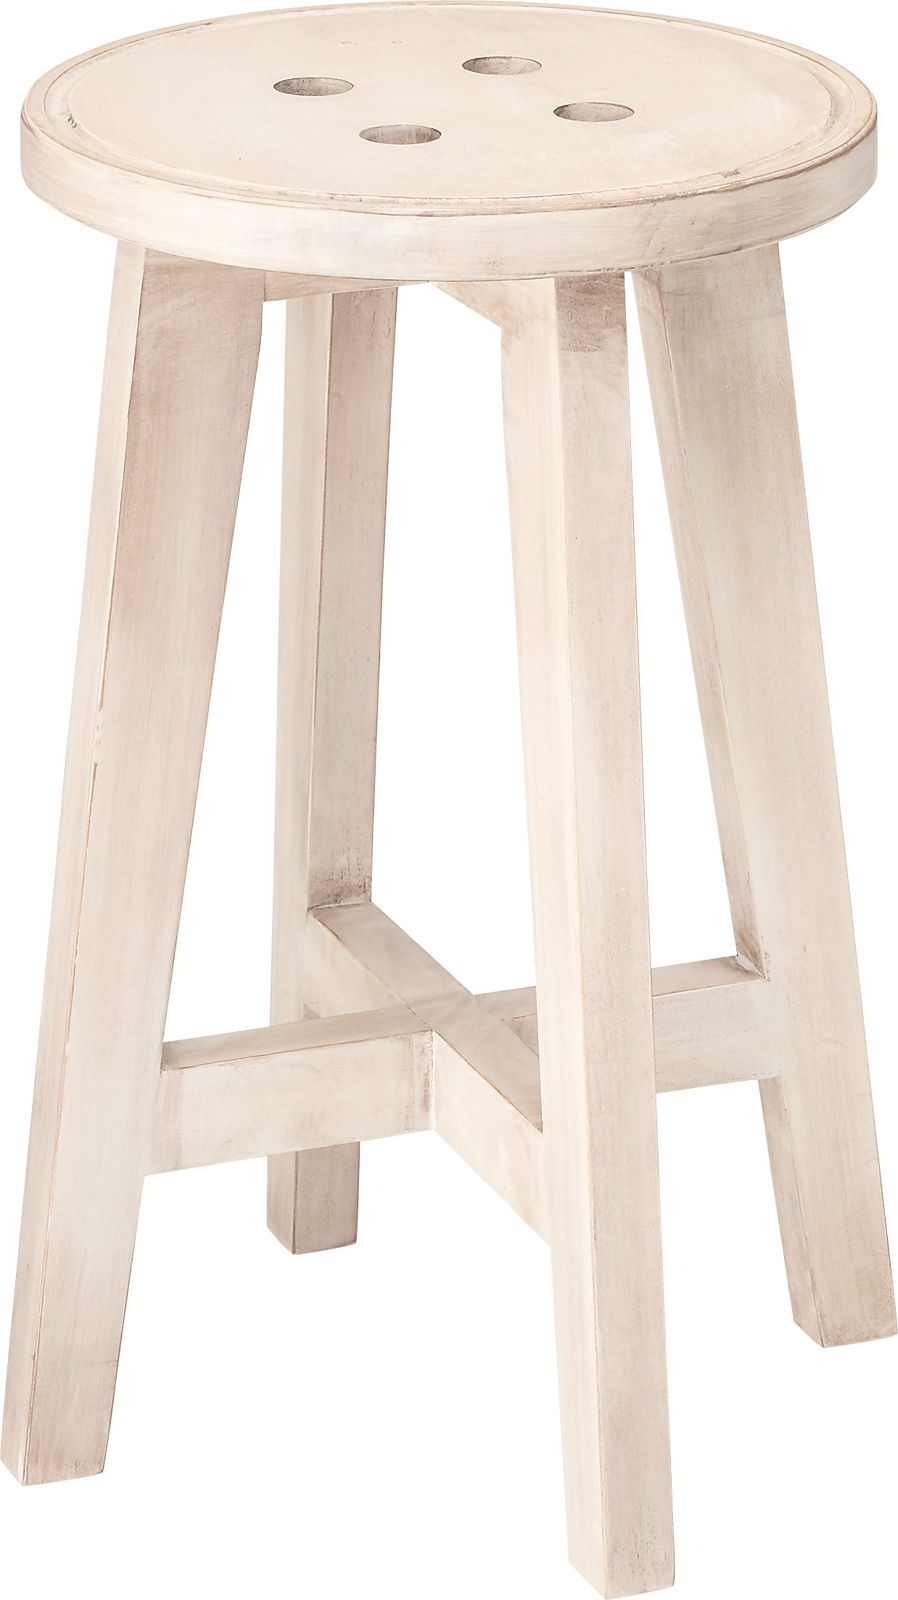 椅子 スツール ラウンドスツール チェア 木製 天然木 ナチュラル シンプル アンティーク ビンテージ ヴィンテージ 2色 ブラウン ホワイト 白 北欧 子供 無垢 レトロ